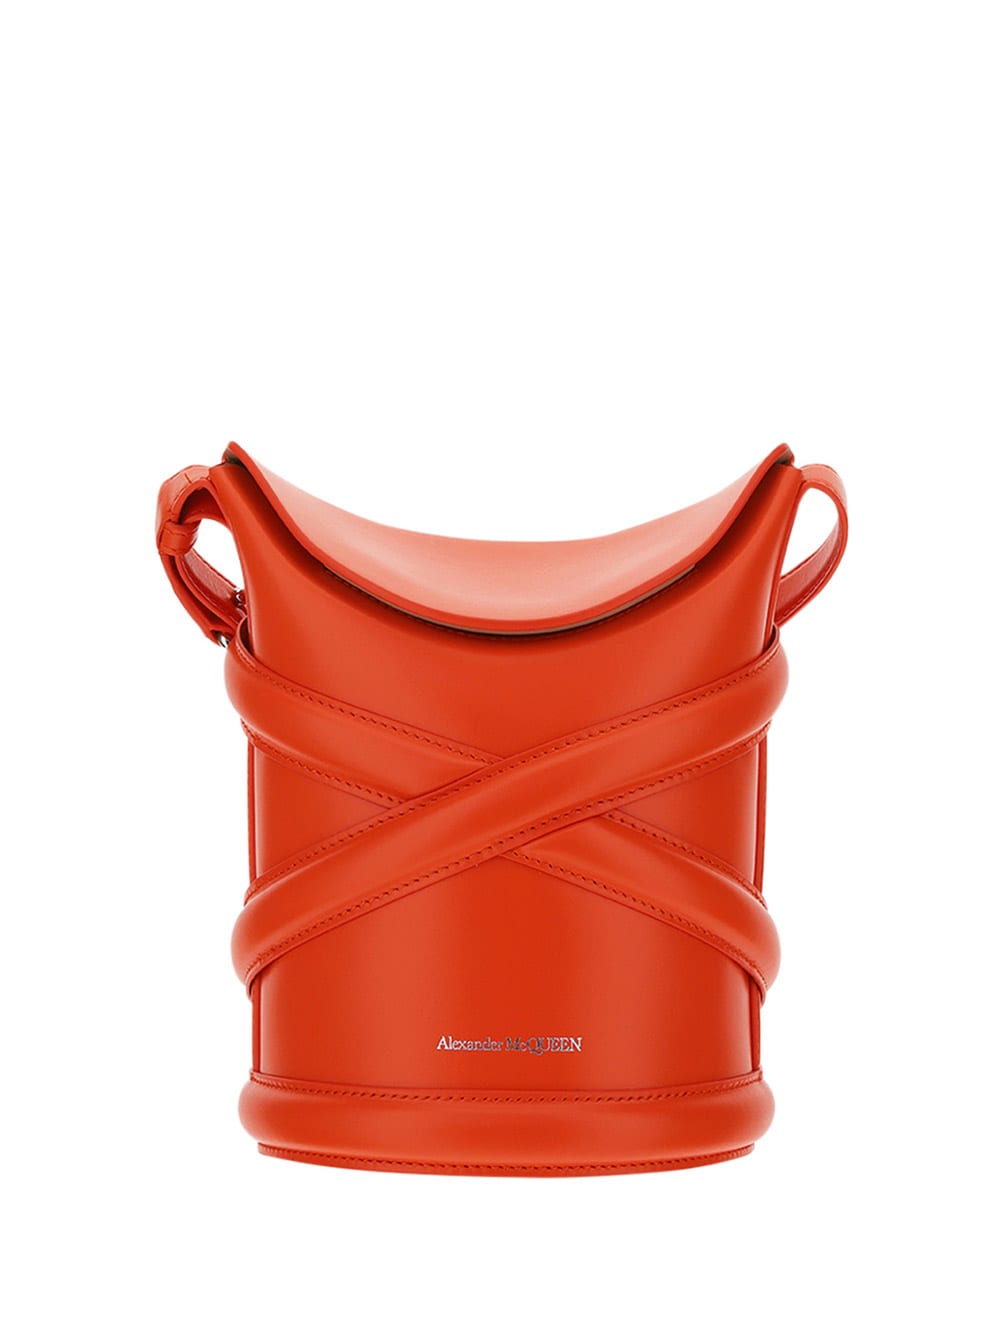 Alexander McQueen The Curve Bucket Bag